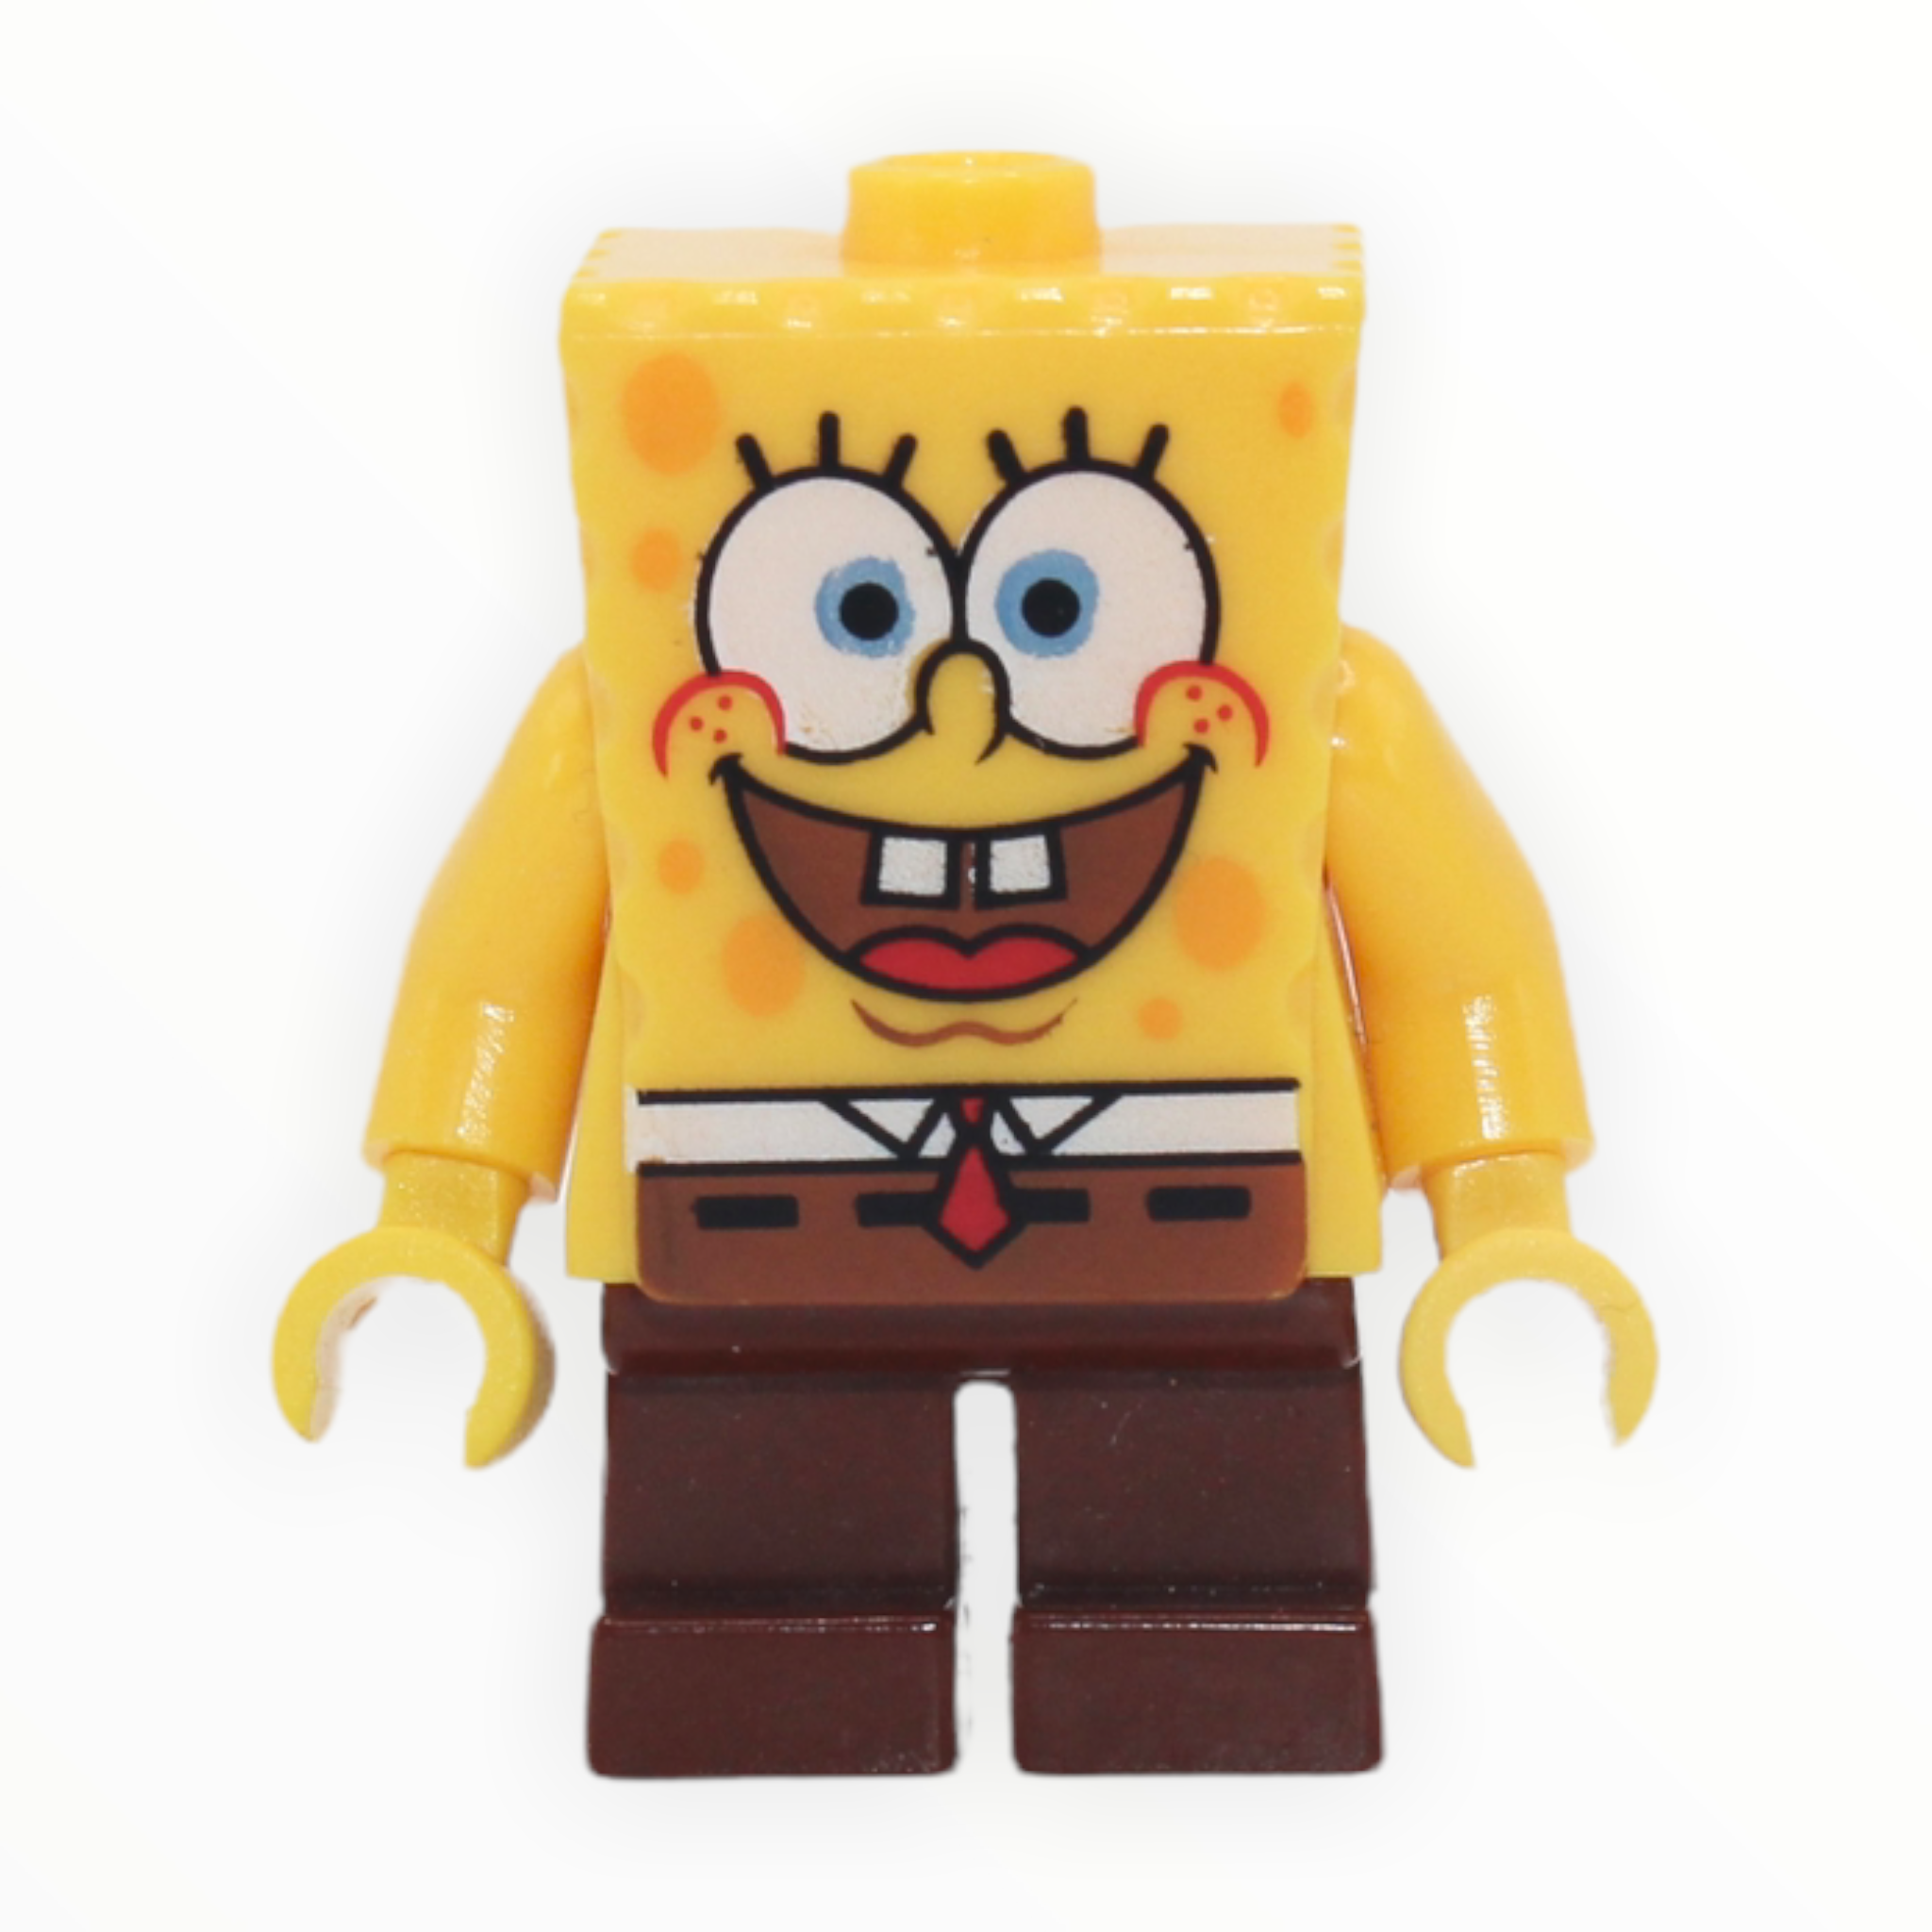 SpongeBob Squarepants (basic “I’m Ready” look)